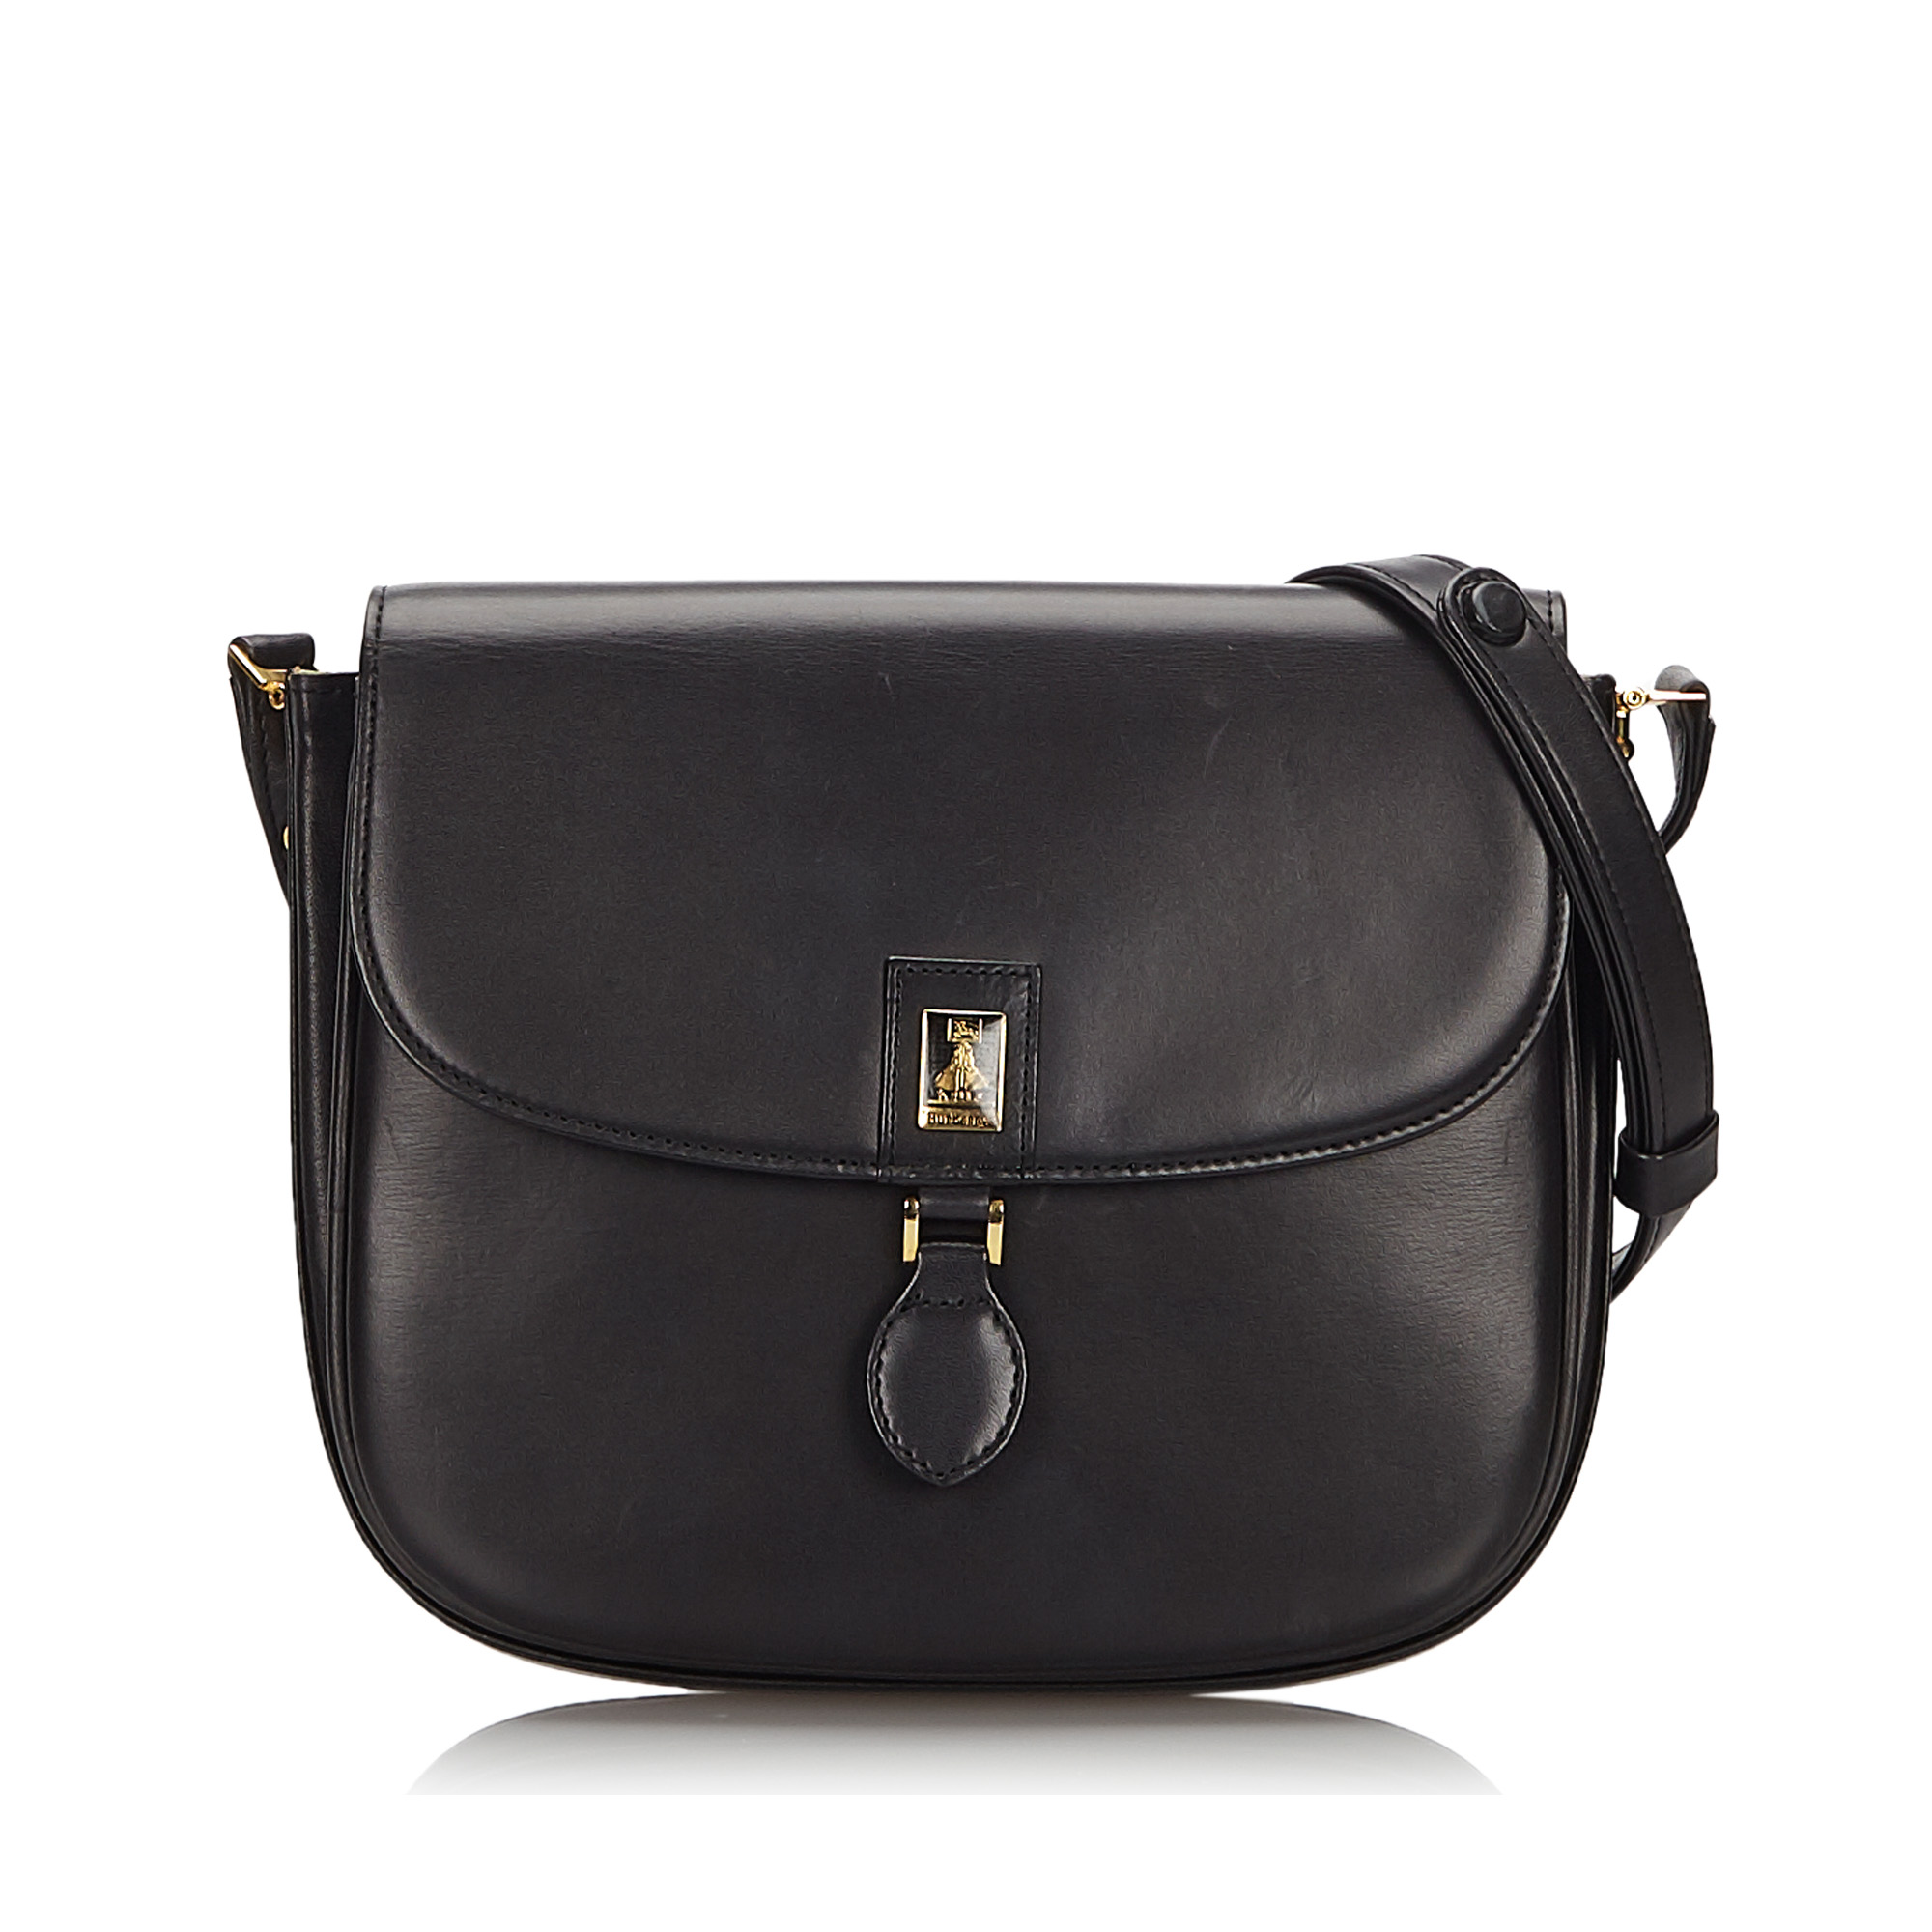 Pre-Loved Burberry Black Others Leather Shoulder Bag United Kingdom | eBay